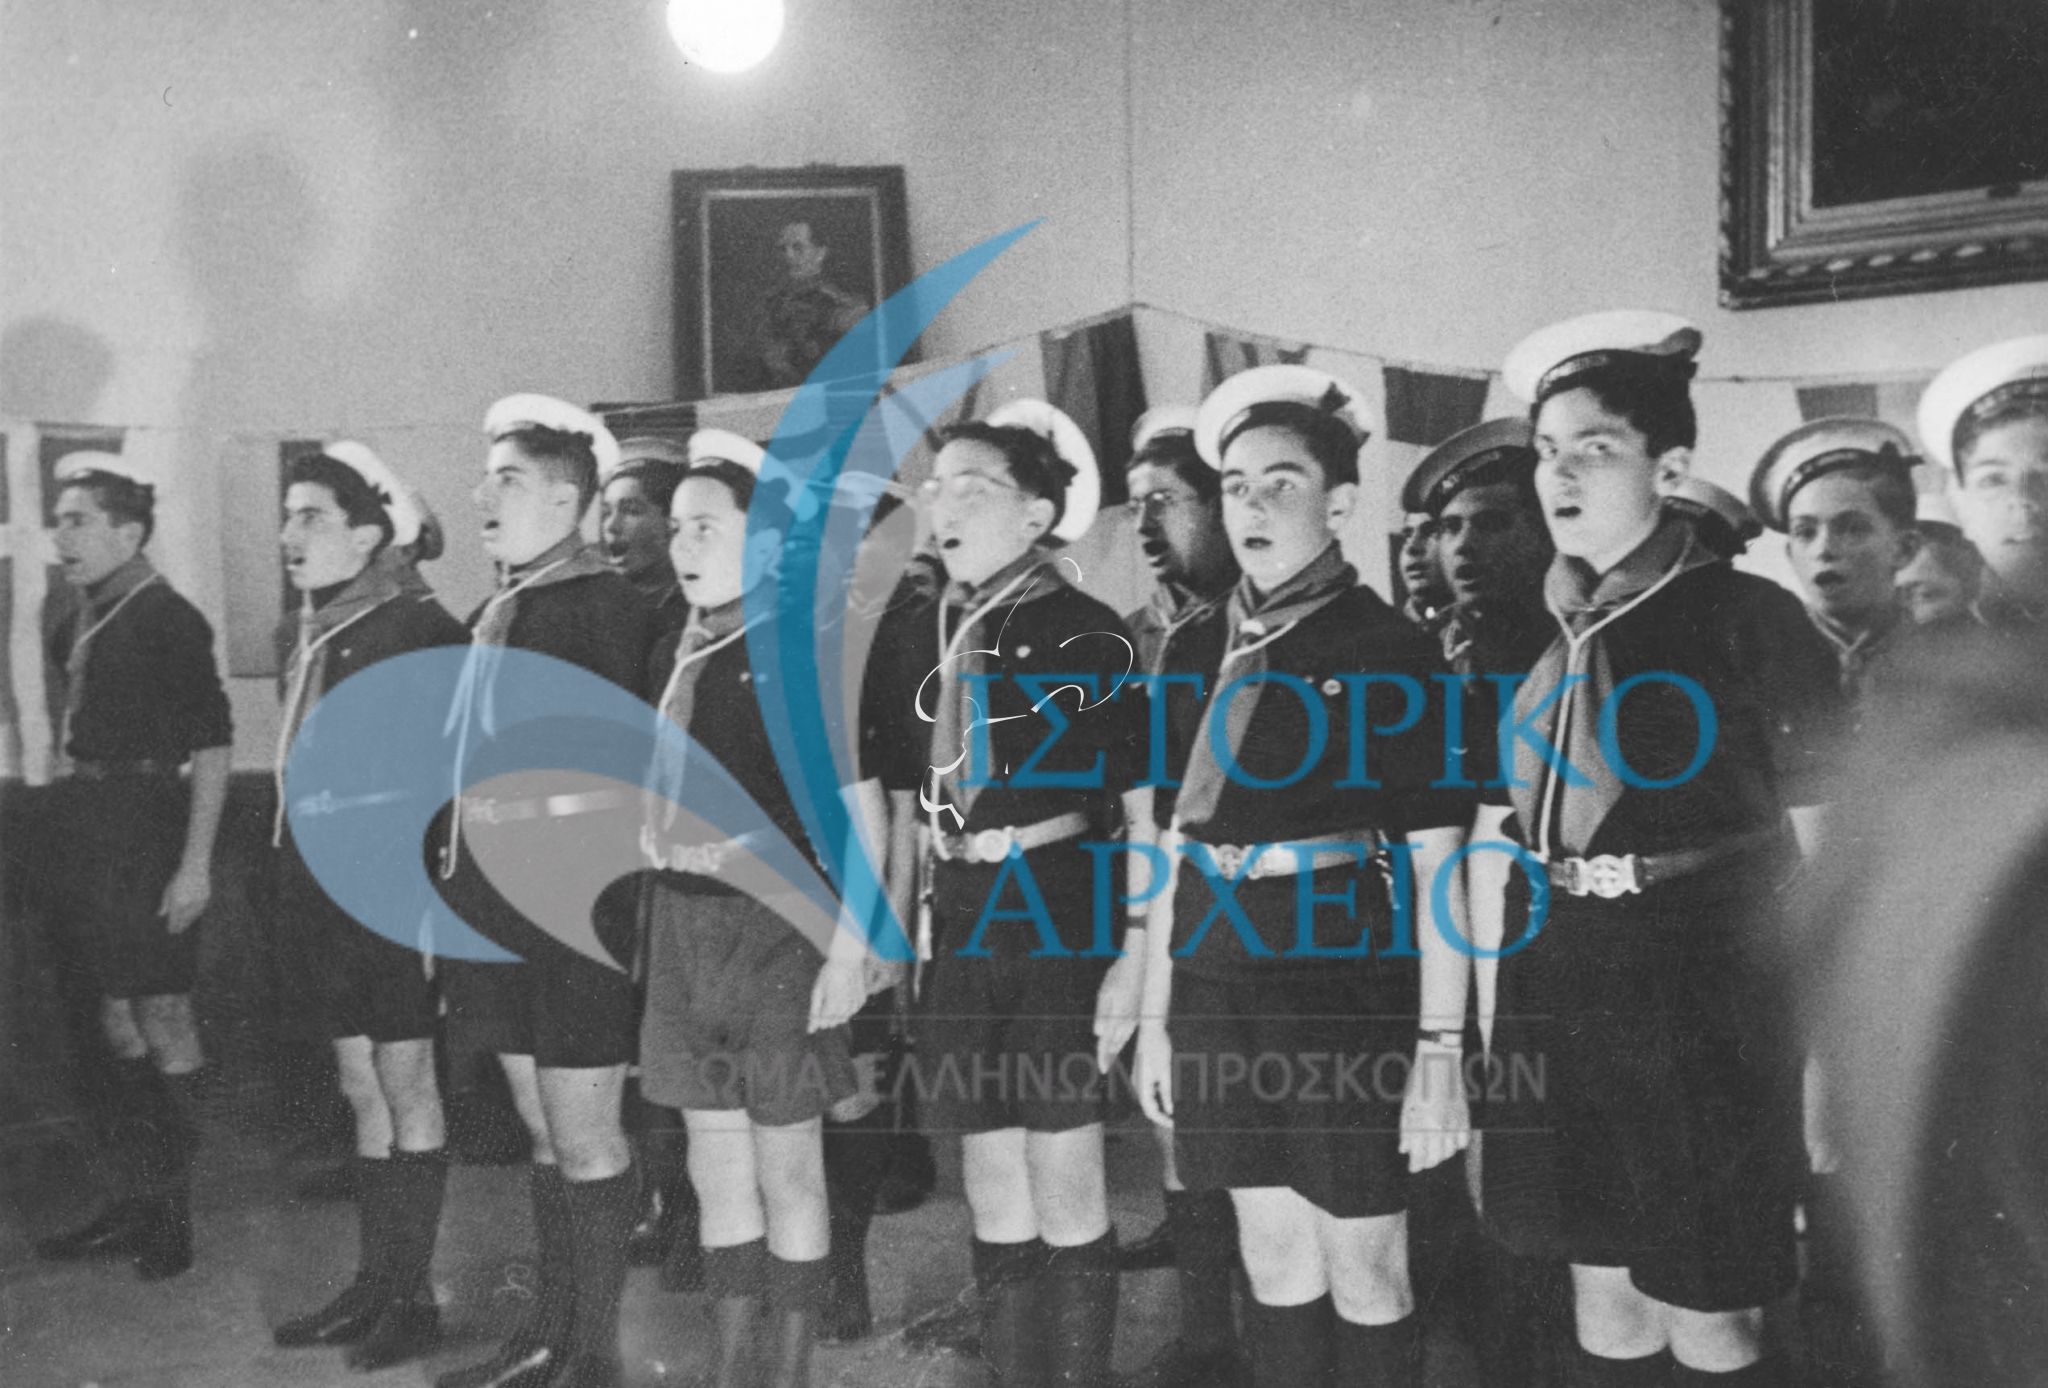 Ναυτοπρόσκοποι της 3ης Ομάδας Αθηνών στην εορτή για την κοπή της βασιλόπιτας στο Ζάππειο το 1947.